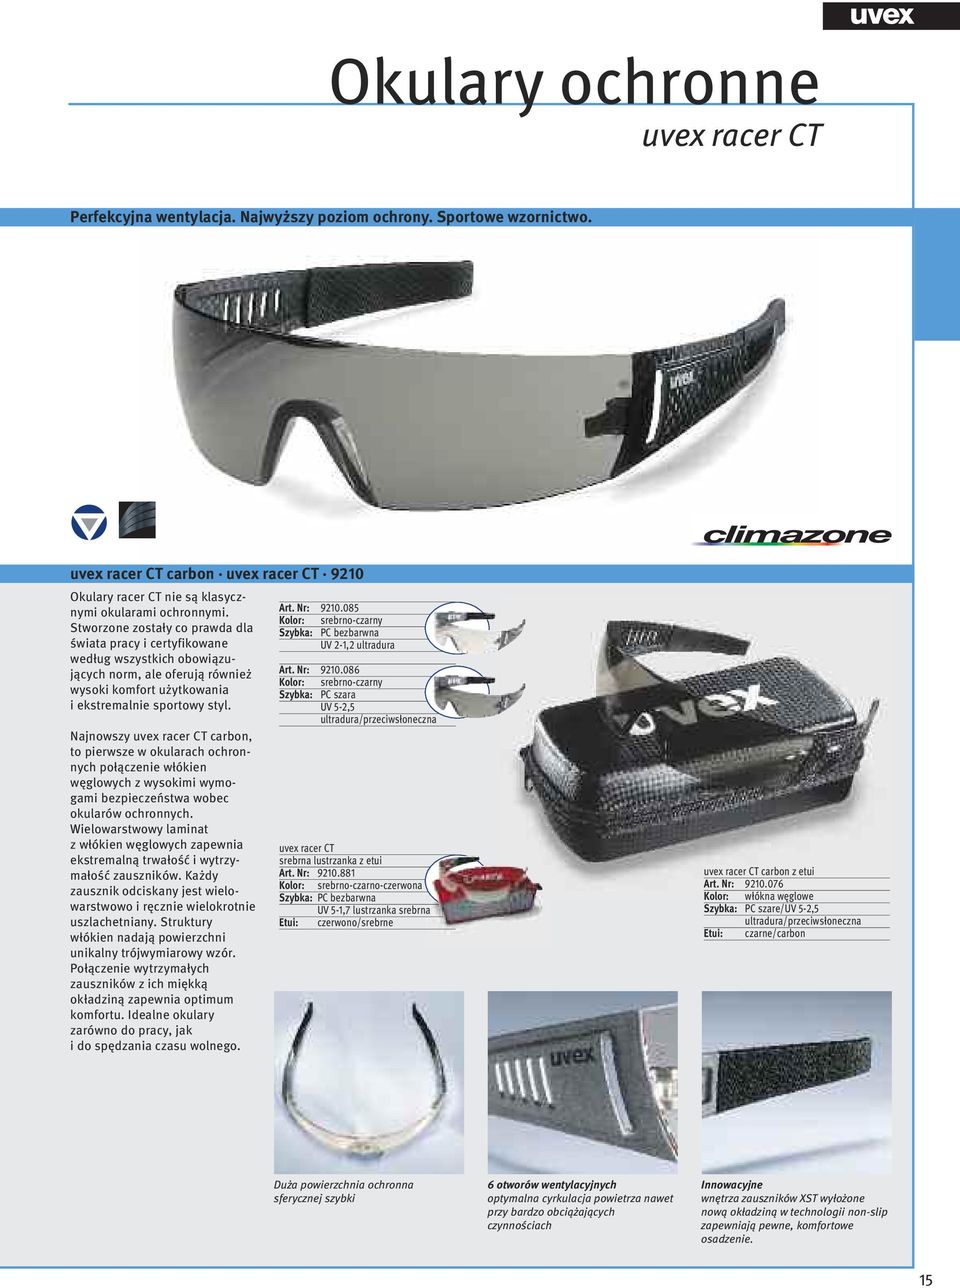 Najnowszy uvex racer CT carbon, to pierwsze w okularach ochronnych połączenie włókien węglowych z wysokimi wymogami bezpieczeństwa wobec okularów ochronnych.